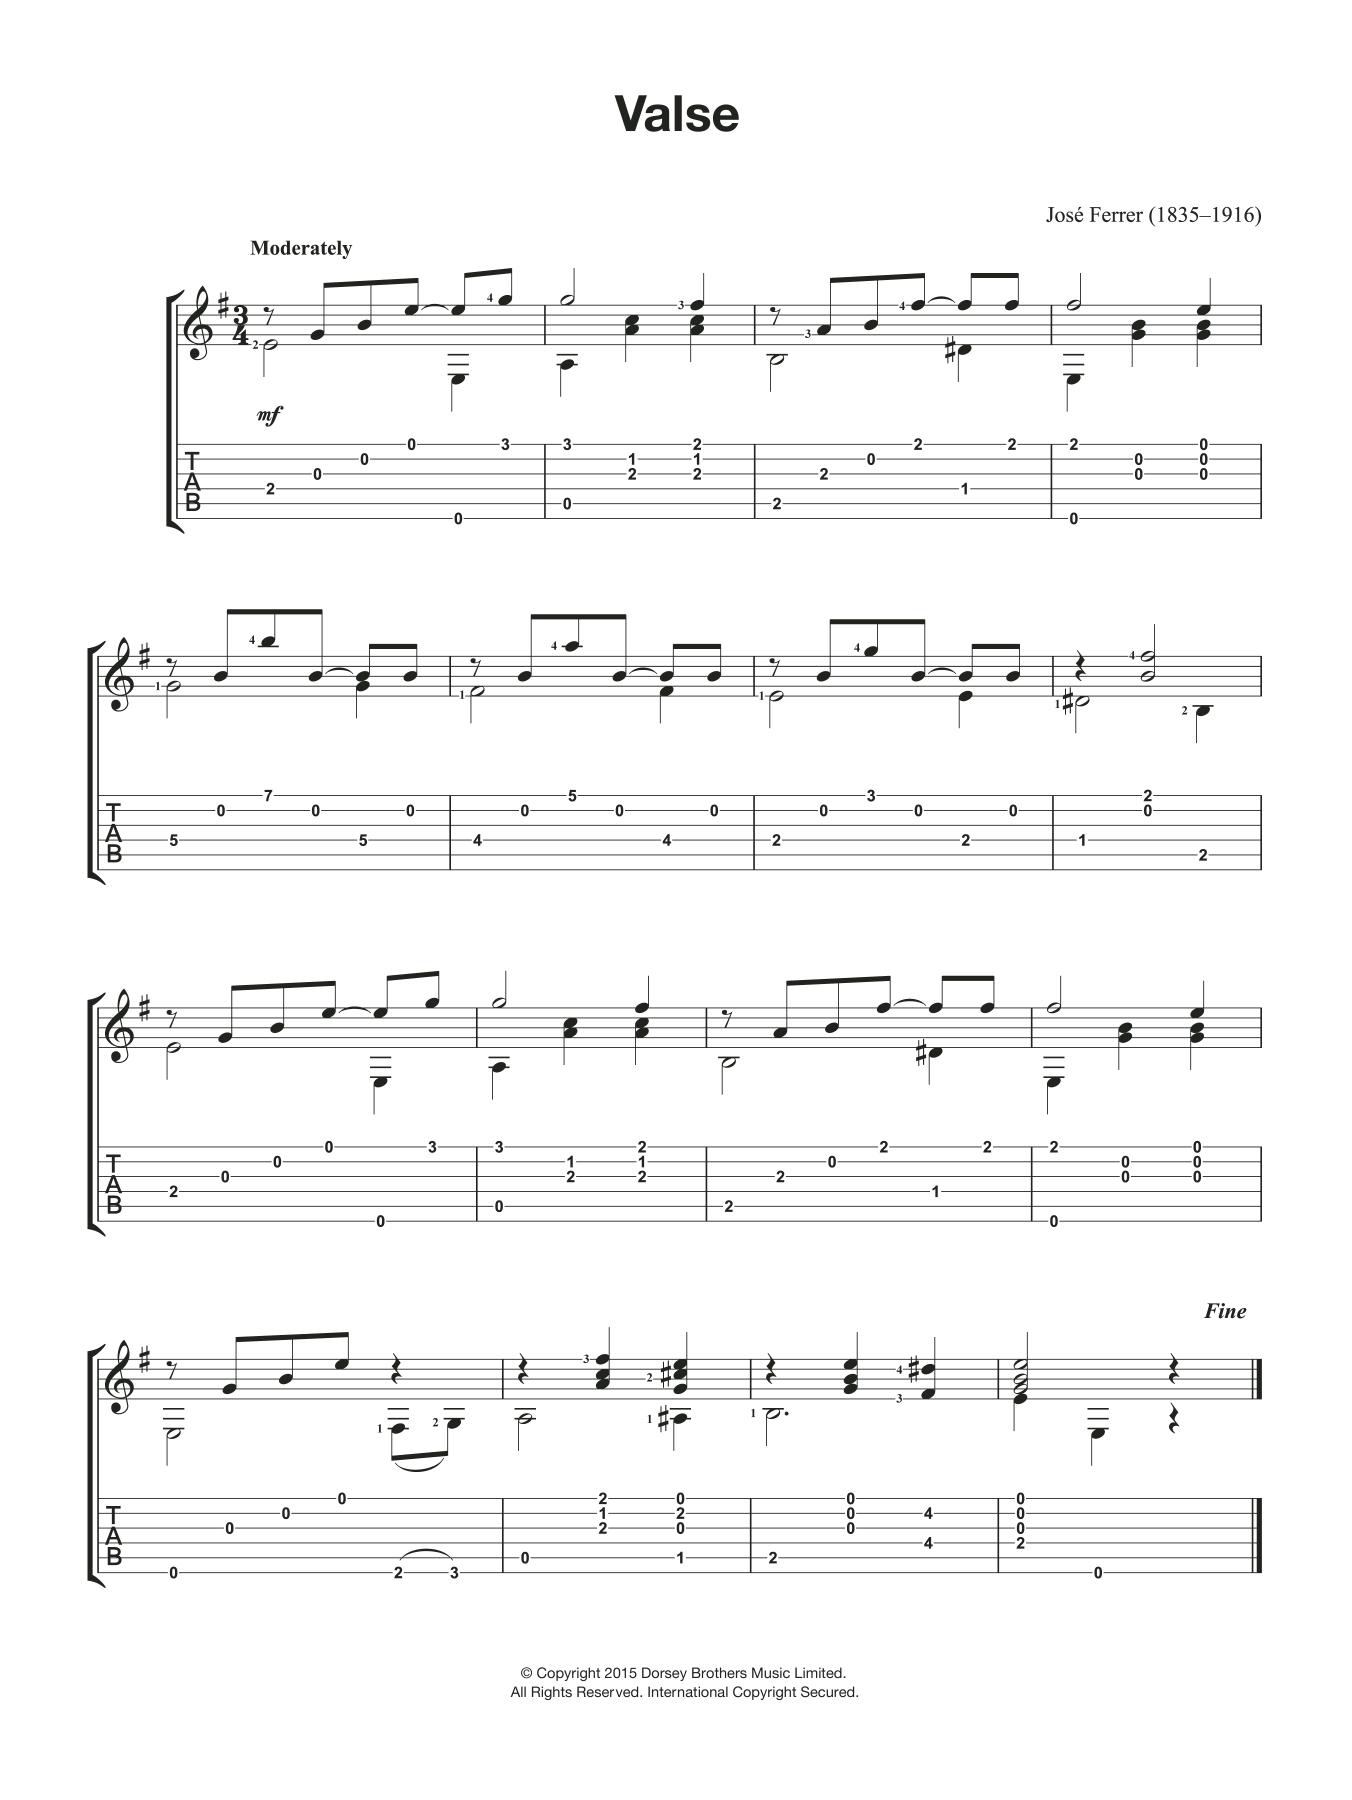 Jose Ferrer Valse Sheet Music Notes & Chords for Guitar - Download or Print PDF